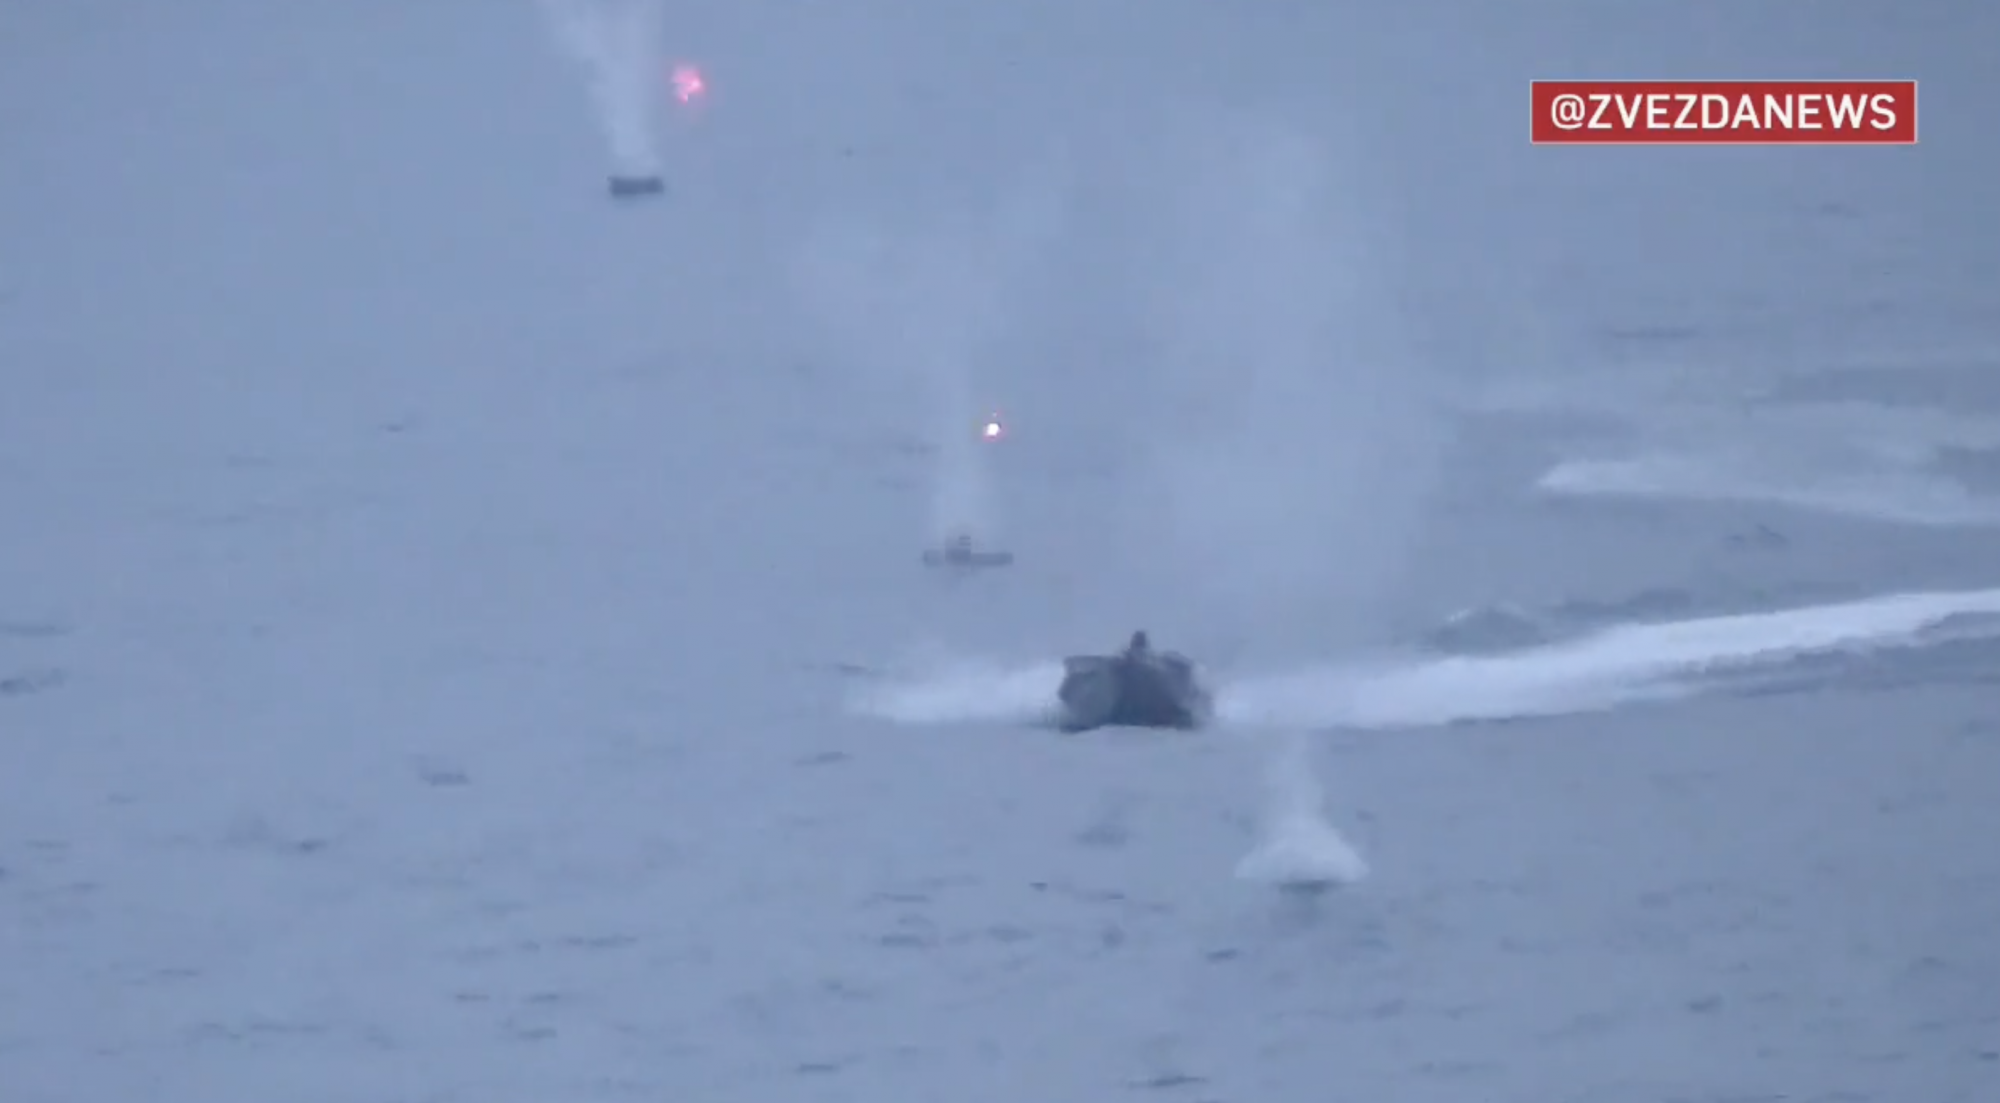 Oroszország azt állítja, hogy ukrán drónhajók támadták meg a Törökországnál állomásozó hadihajóját